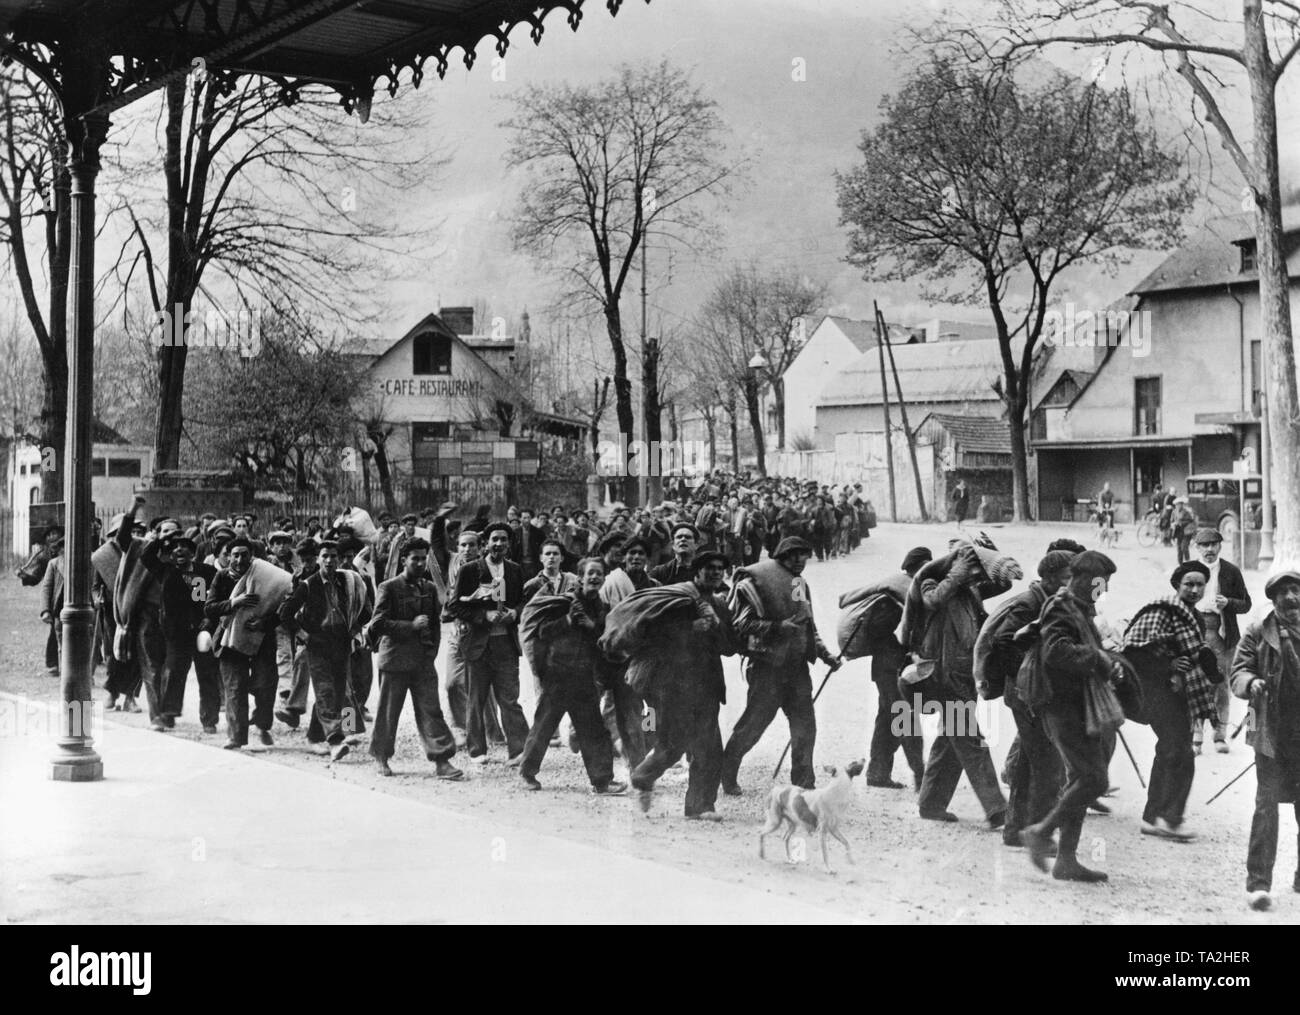 Foto einer Spalte mit ehemaliger Flüchtling republikanischen Soldaten auf dem Bahnhofsplatz in den Französischen Pyrenees-Bagneres-de-Luchon direkt hinter der französisch-spanischen Grenze. Die Männer tragen Decken, tragen ihr Gepäck, und sind bereits unscharfgeschaltet ist. Sie werden von den Einwohnern von Luchon beobachtet. Foto von April, 1938. Stockfoto